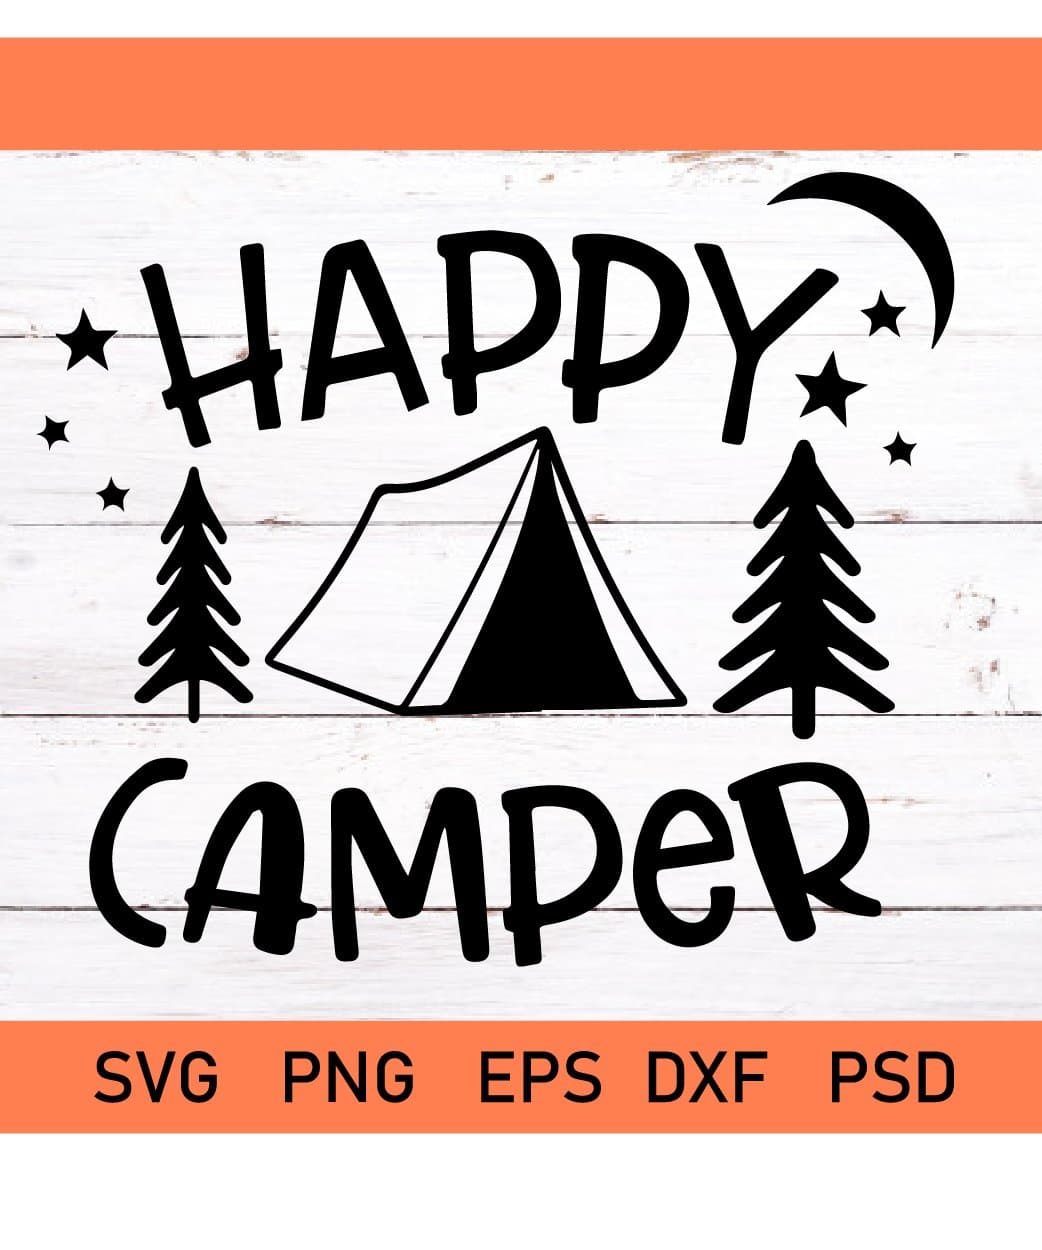 Happy camper svg, Camping svg, Travel svg, Camping quote svg, Camper svg